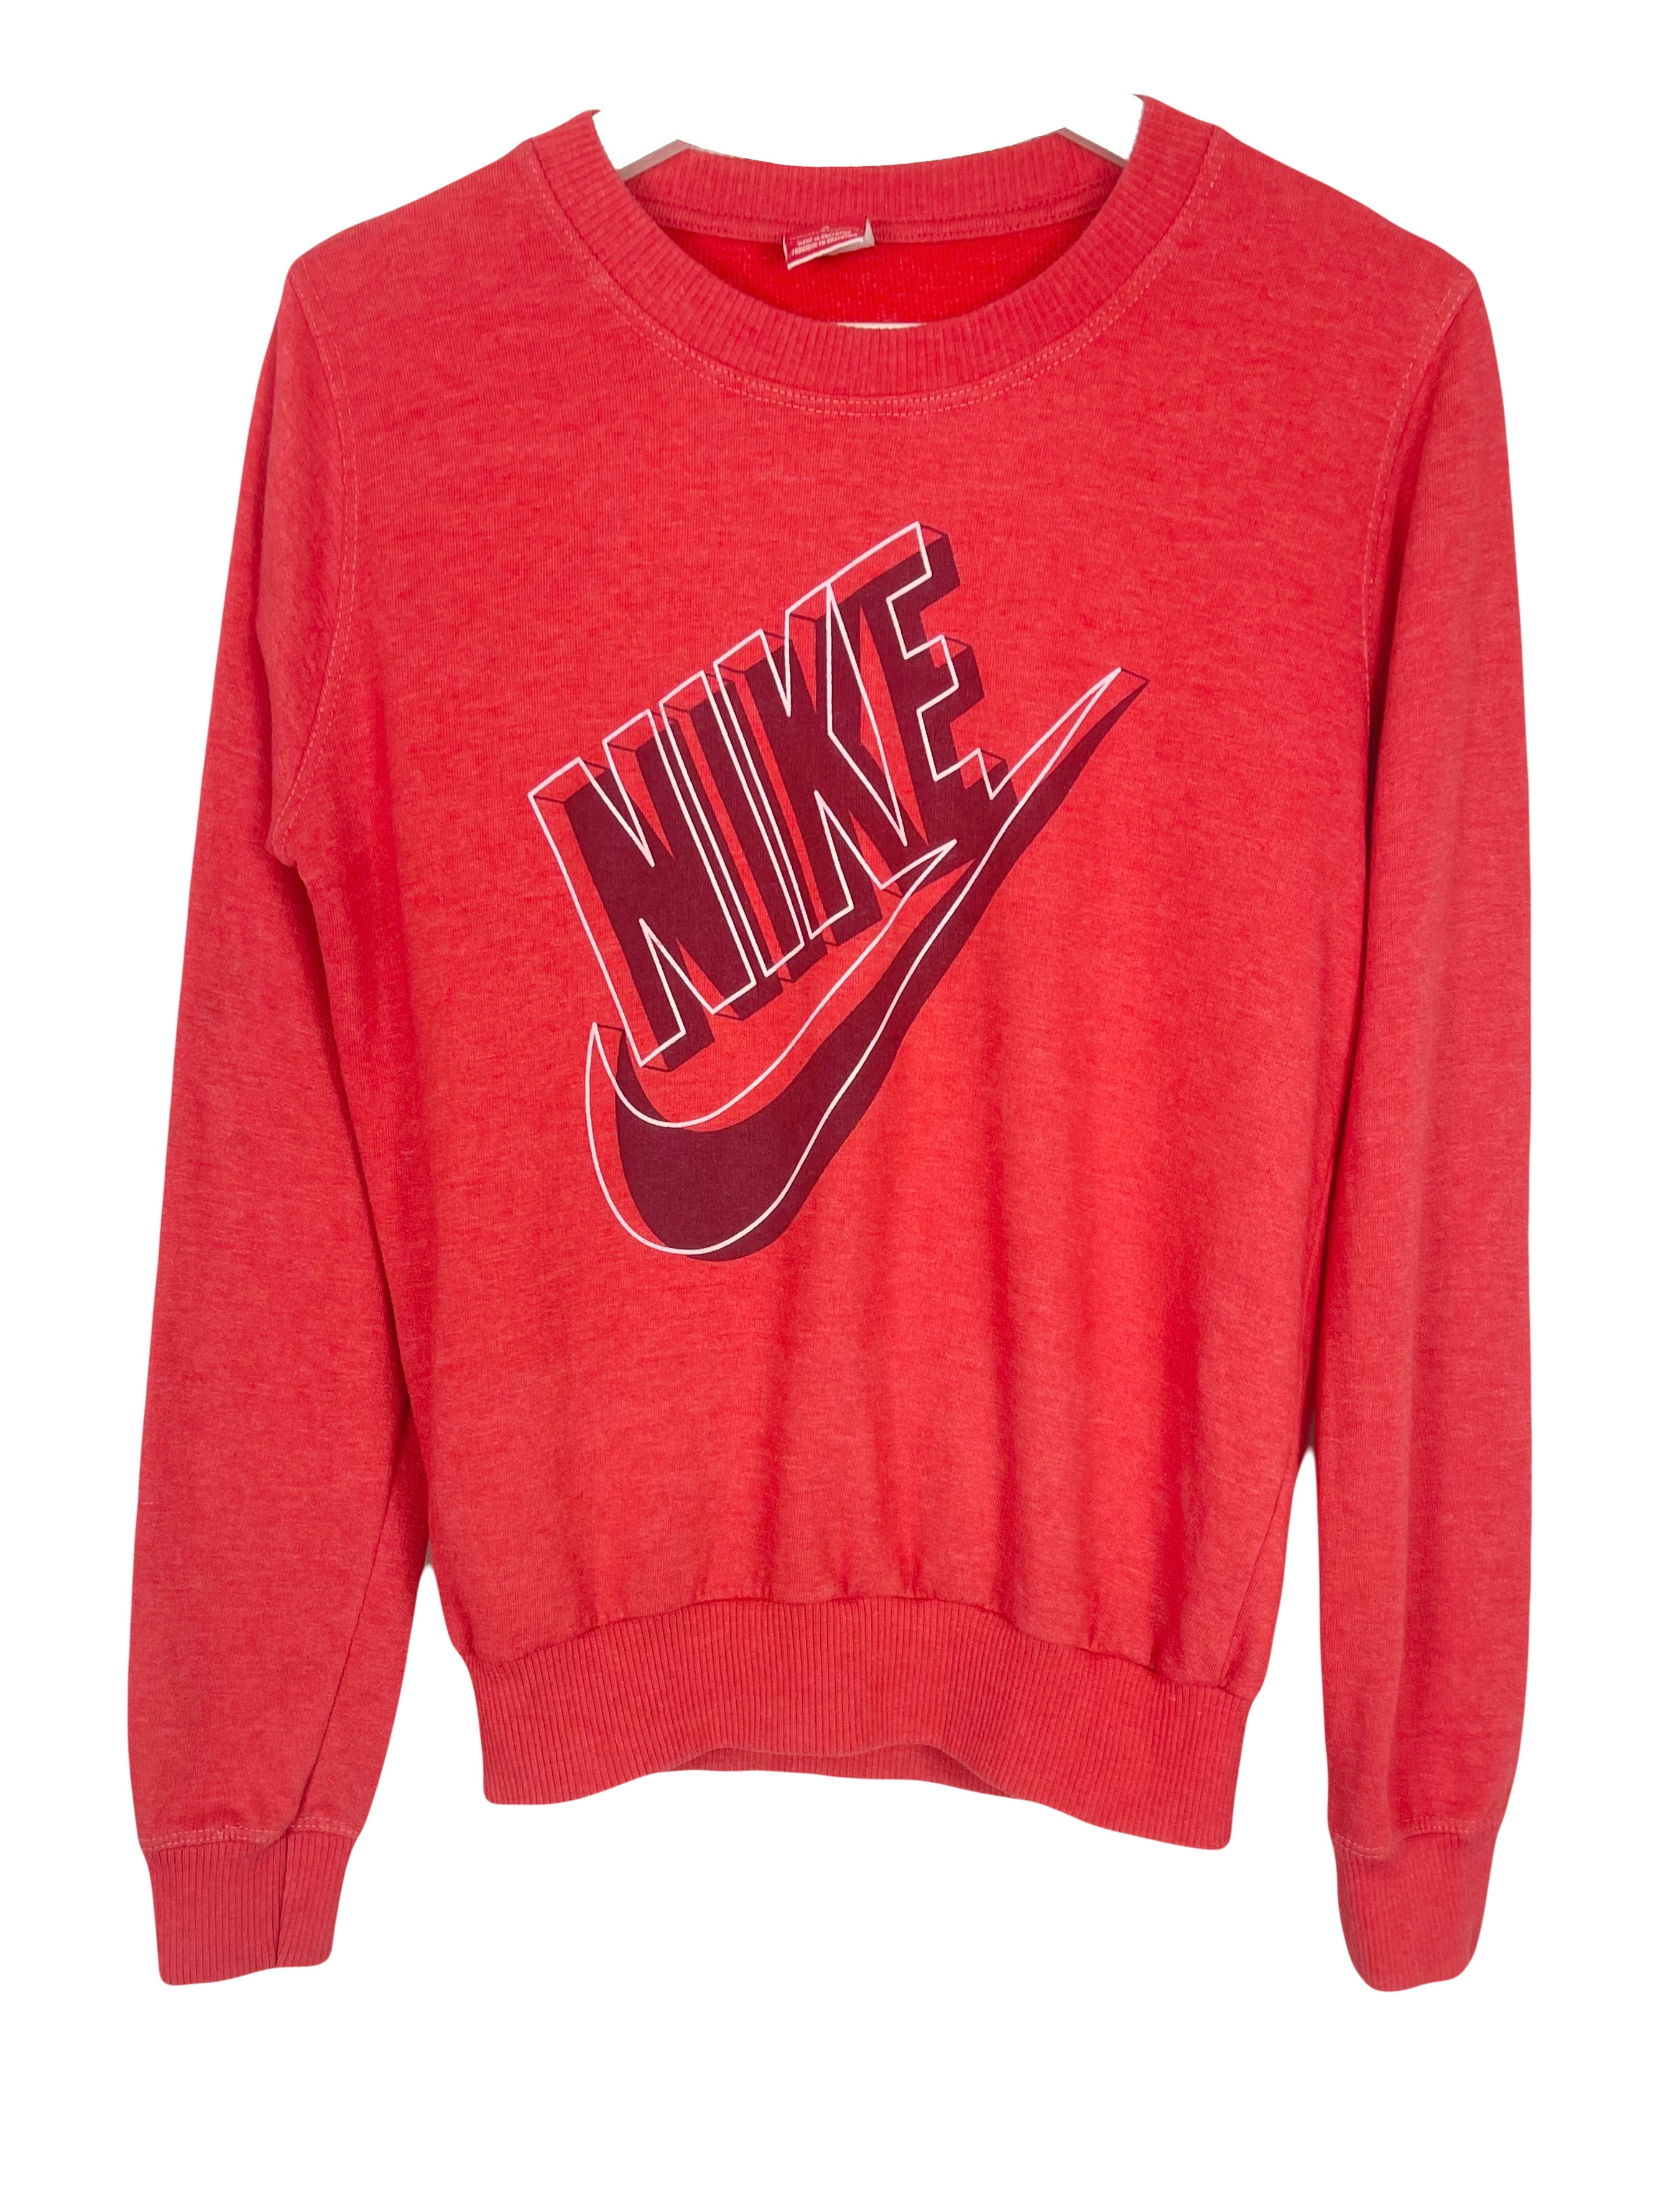  Sweatshirt Nike Sweat - S - PLOMOSTORE